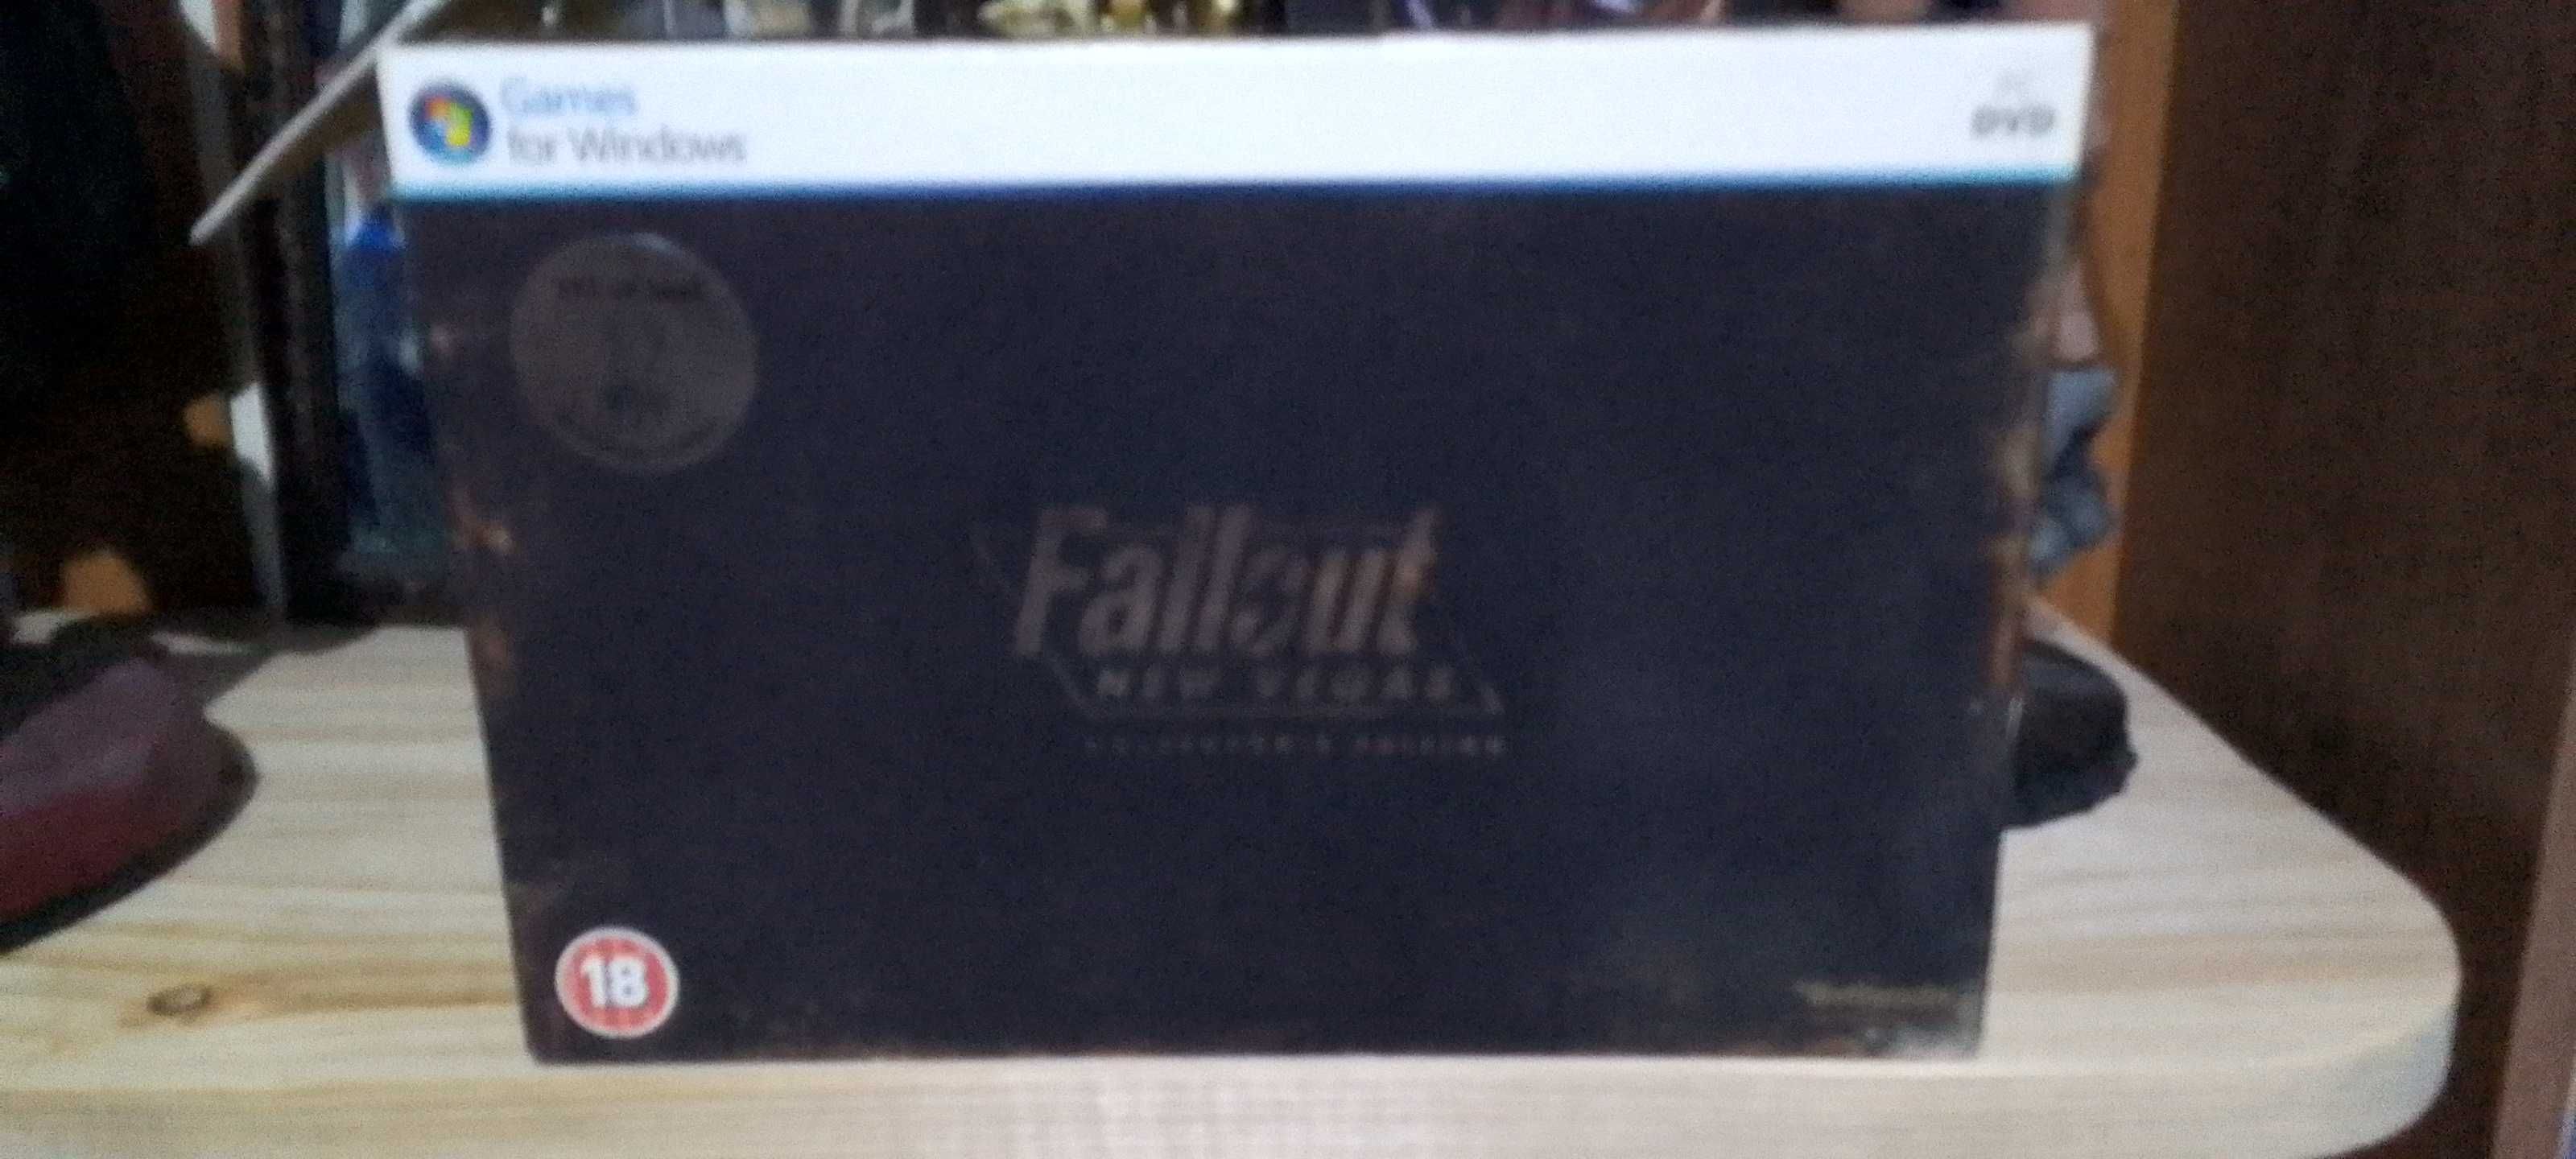 Fallout: New Vegas Edycja kolekcjonerska